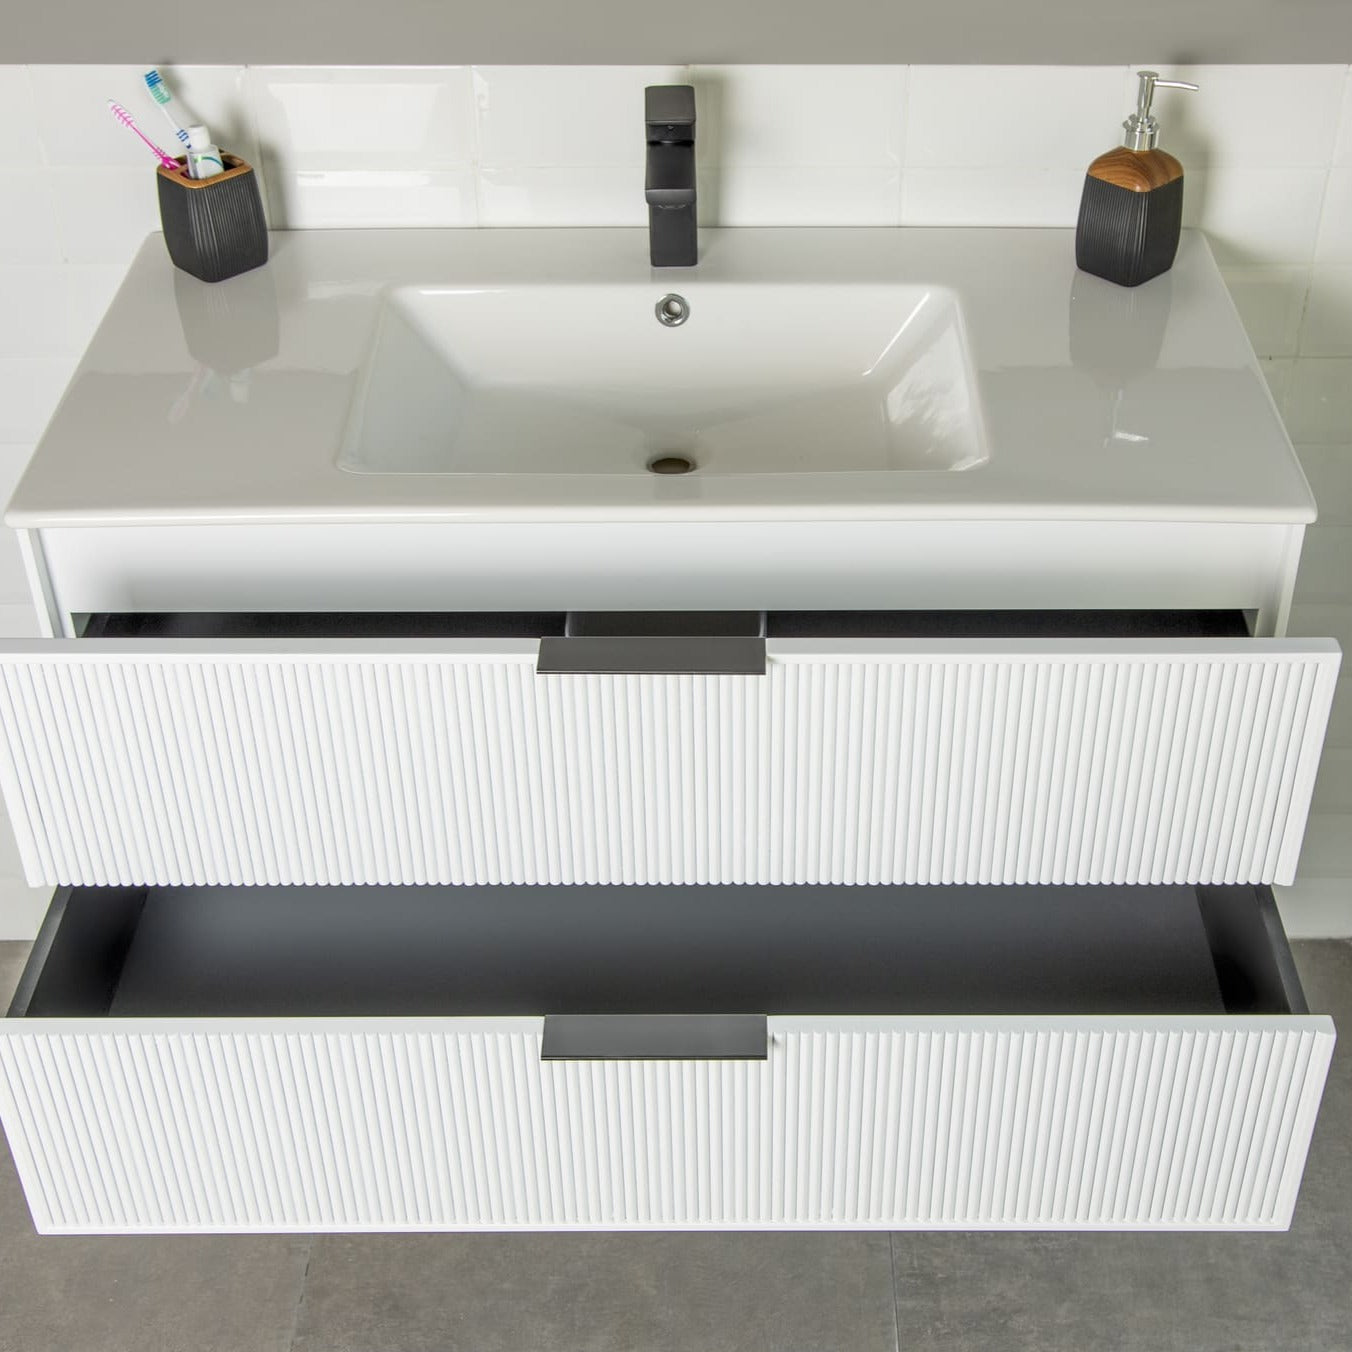 Sorrento Bathroom Vanity Homelero 36" #size_36" #color_white #hardware_black